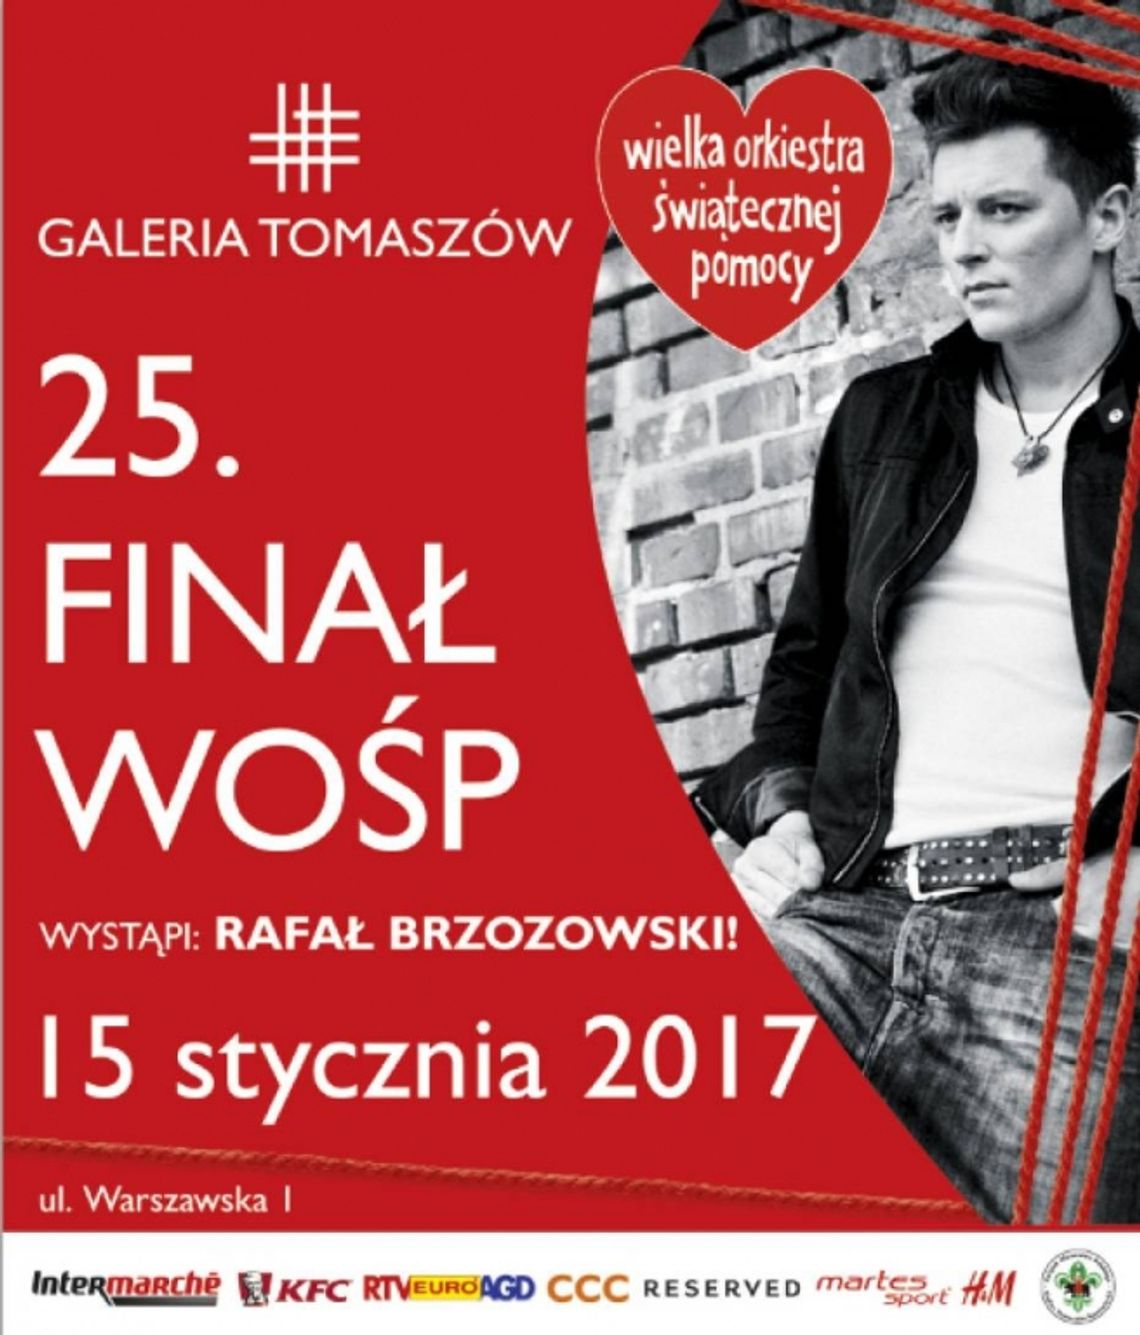 Rafał Brzozowski na finale WOŚP w Tomaszowie Mazowieckim